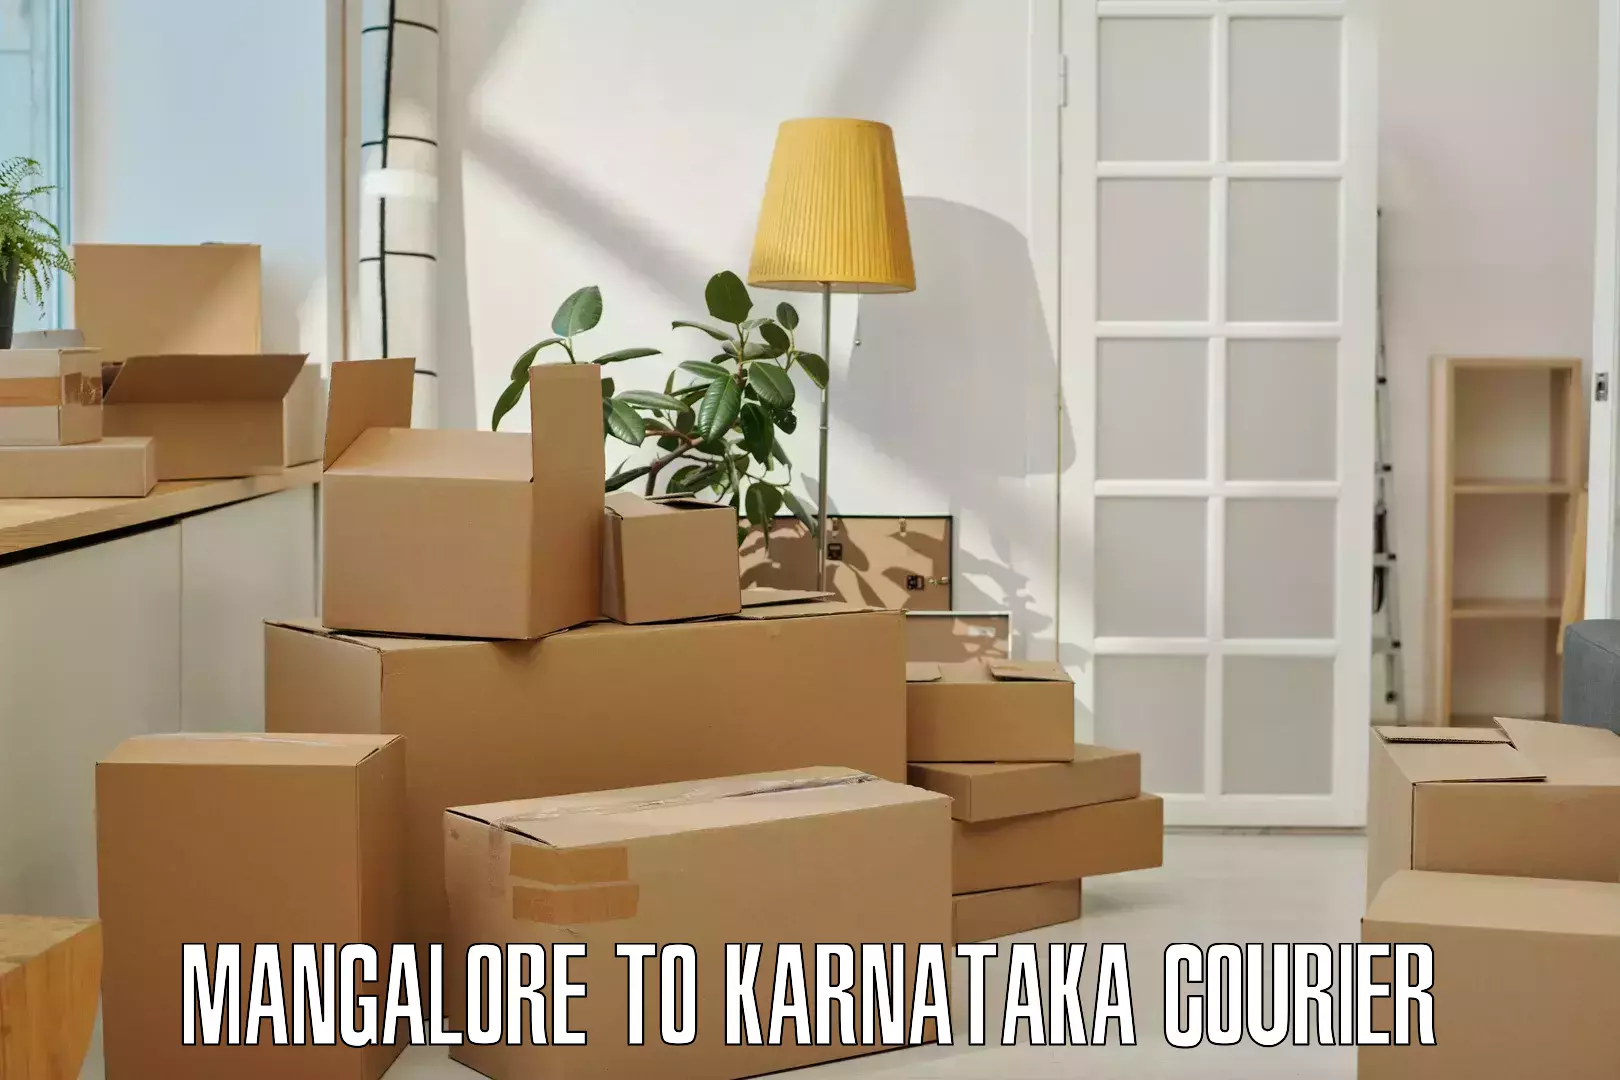 Express package handling Mangalore to Karnataka